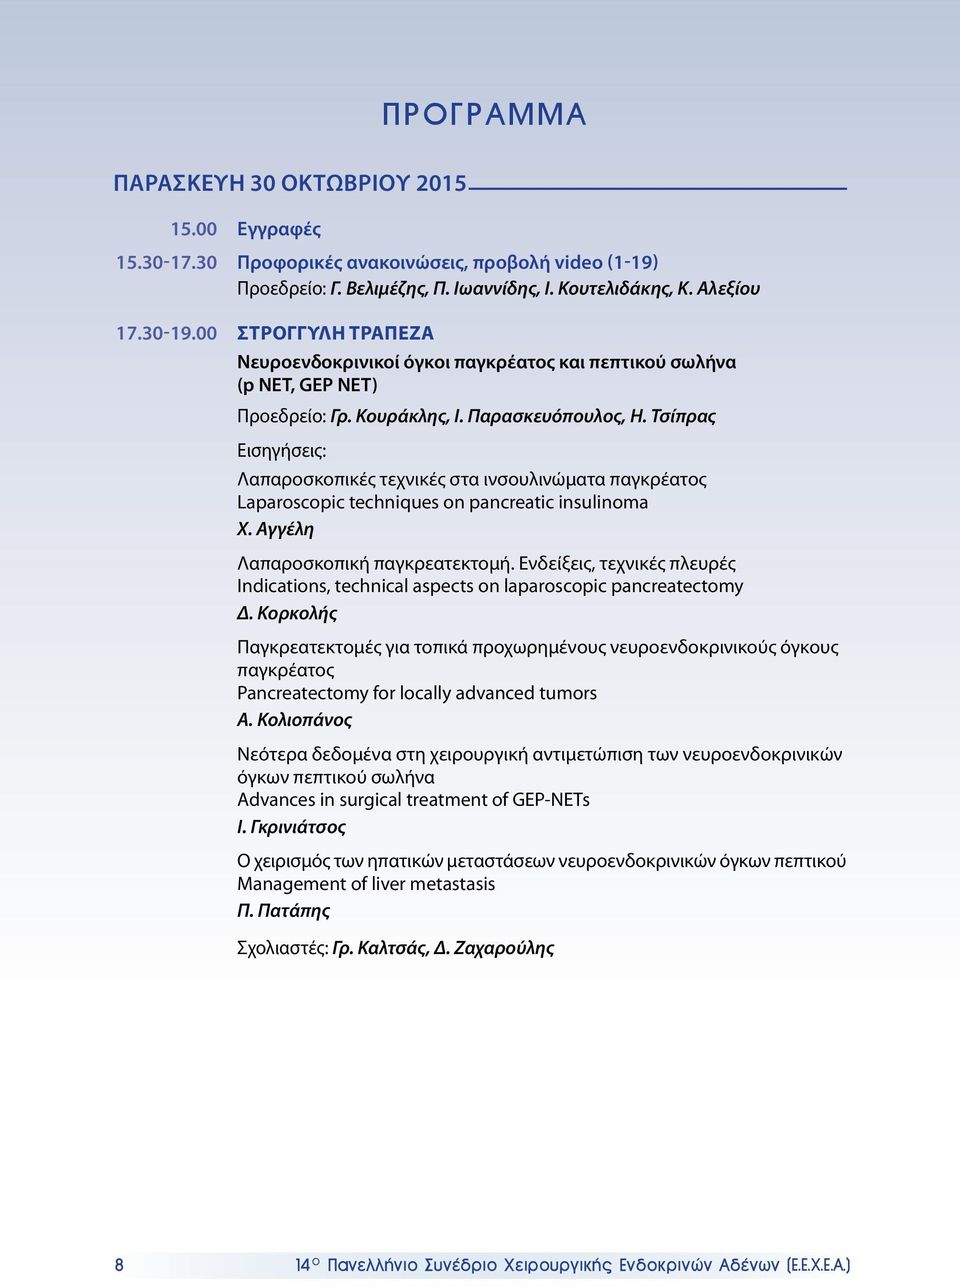 Τσίπρας Εισηγήσεις: Λαπαροσκοπικές τεχνικές στα ινσουλινώματα παγκρέατος Laparoscopic techniques on pancreatic insulinoma Χ. Αγγέλη Λαπαροσκοπική παγκρεατεκτομή.